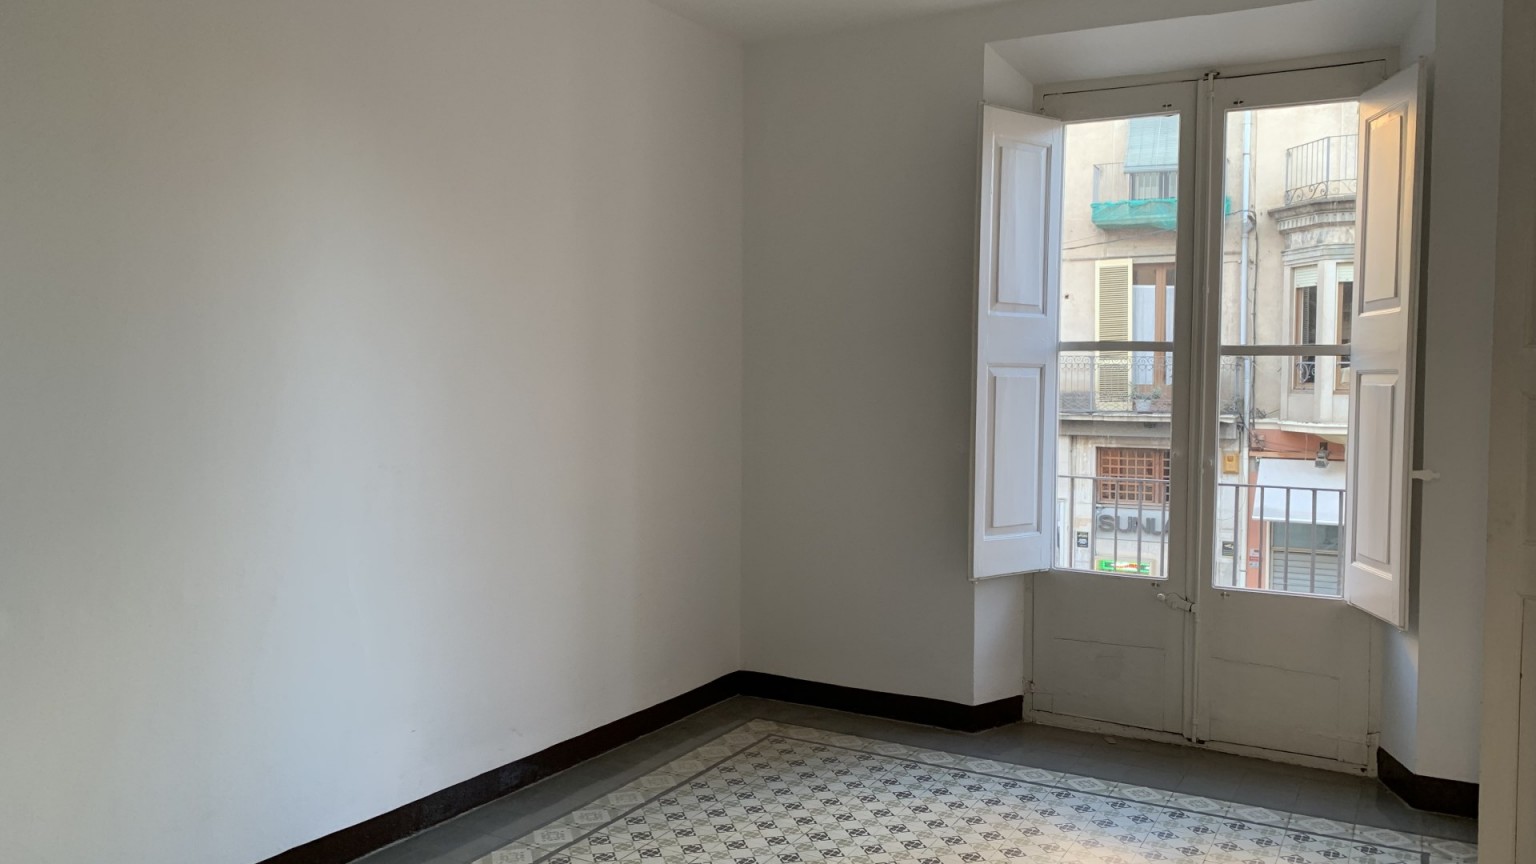 Amplio piso en venta, de 4 habitaciones, con excelente situación, en la Rambla de Figueres. 